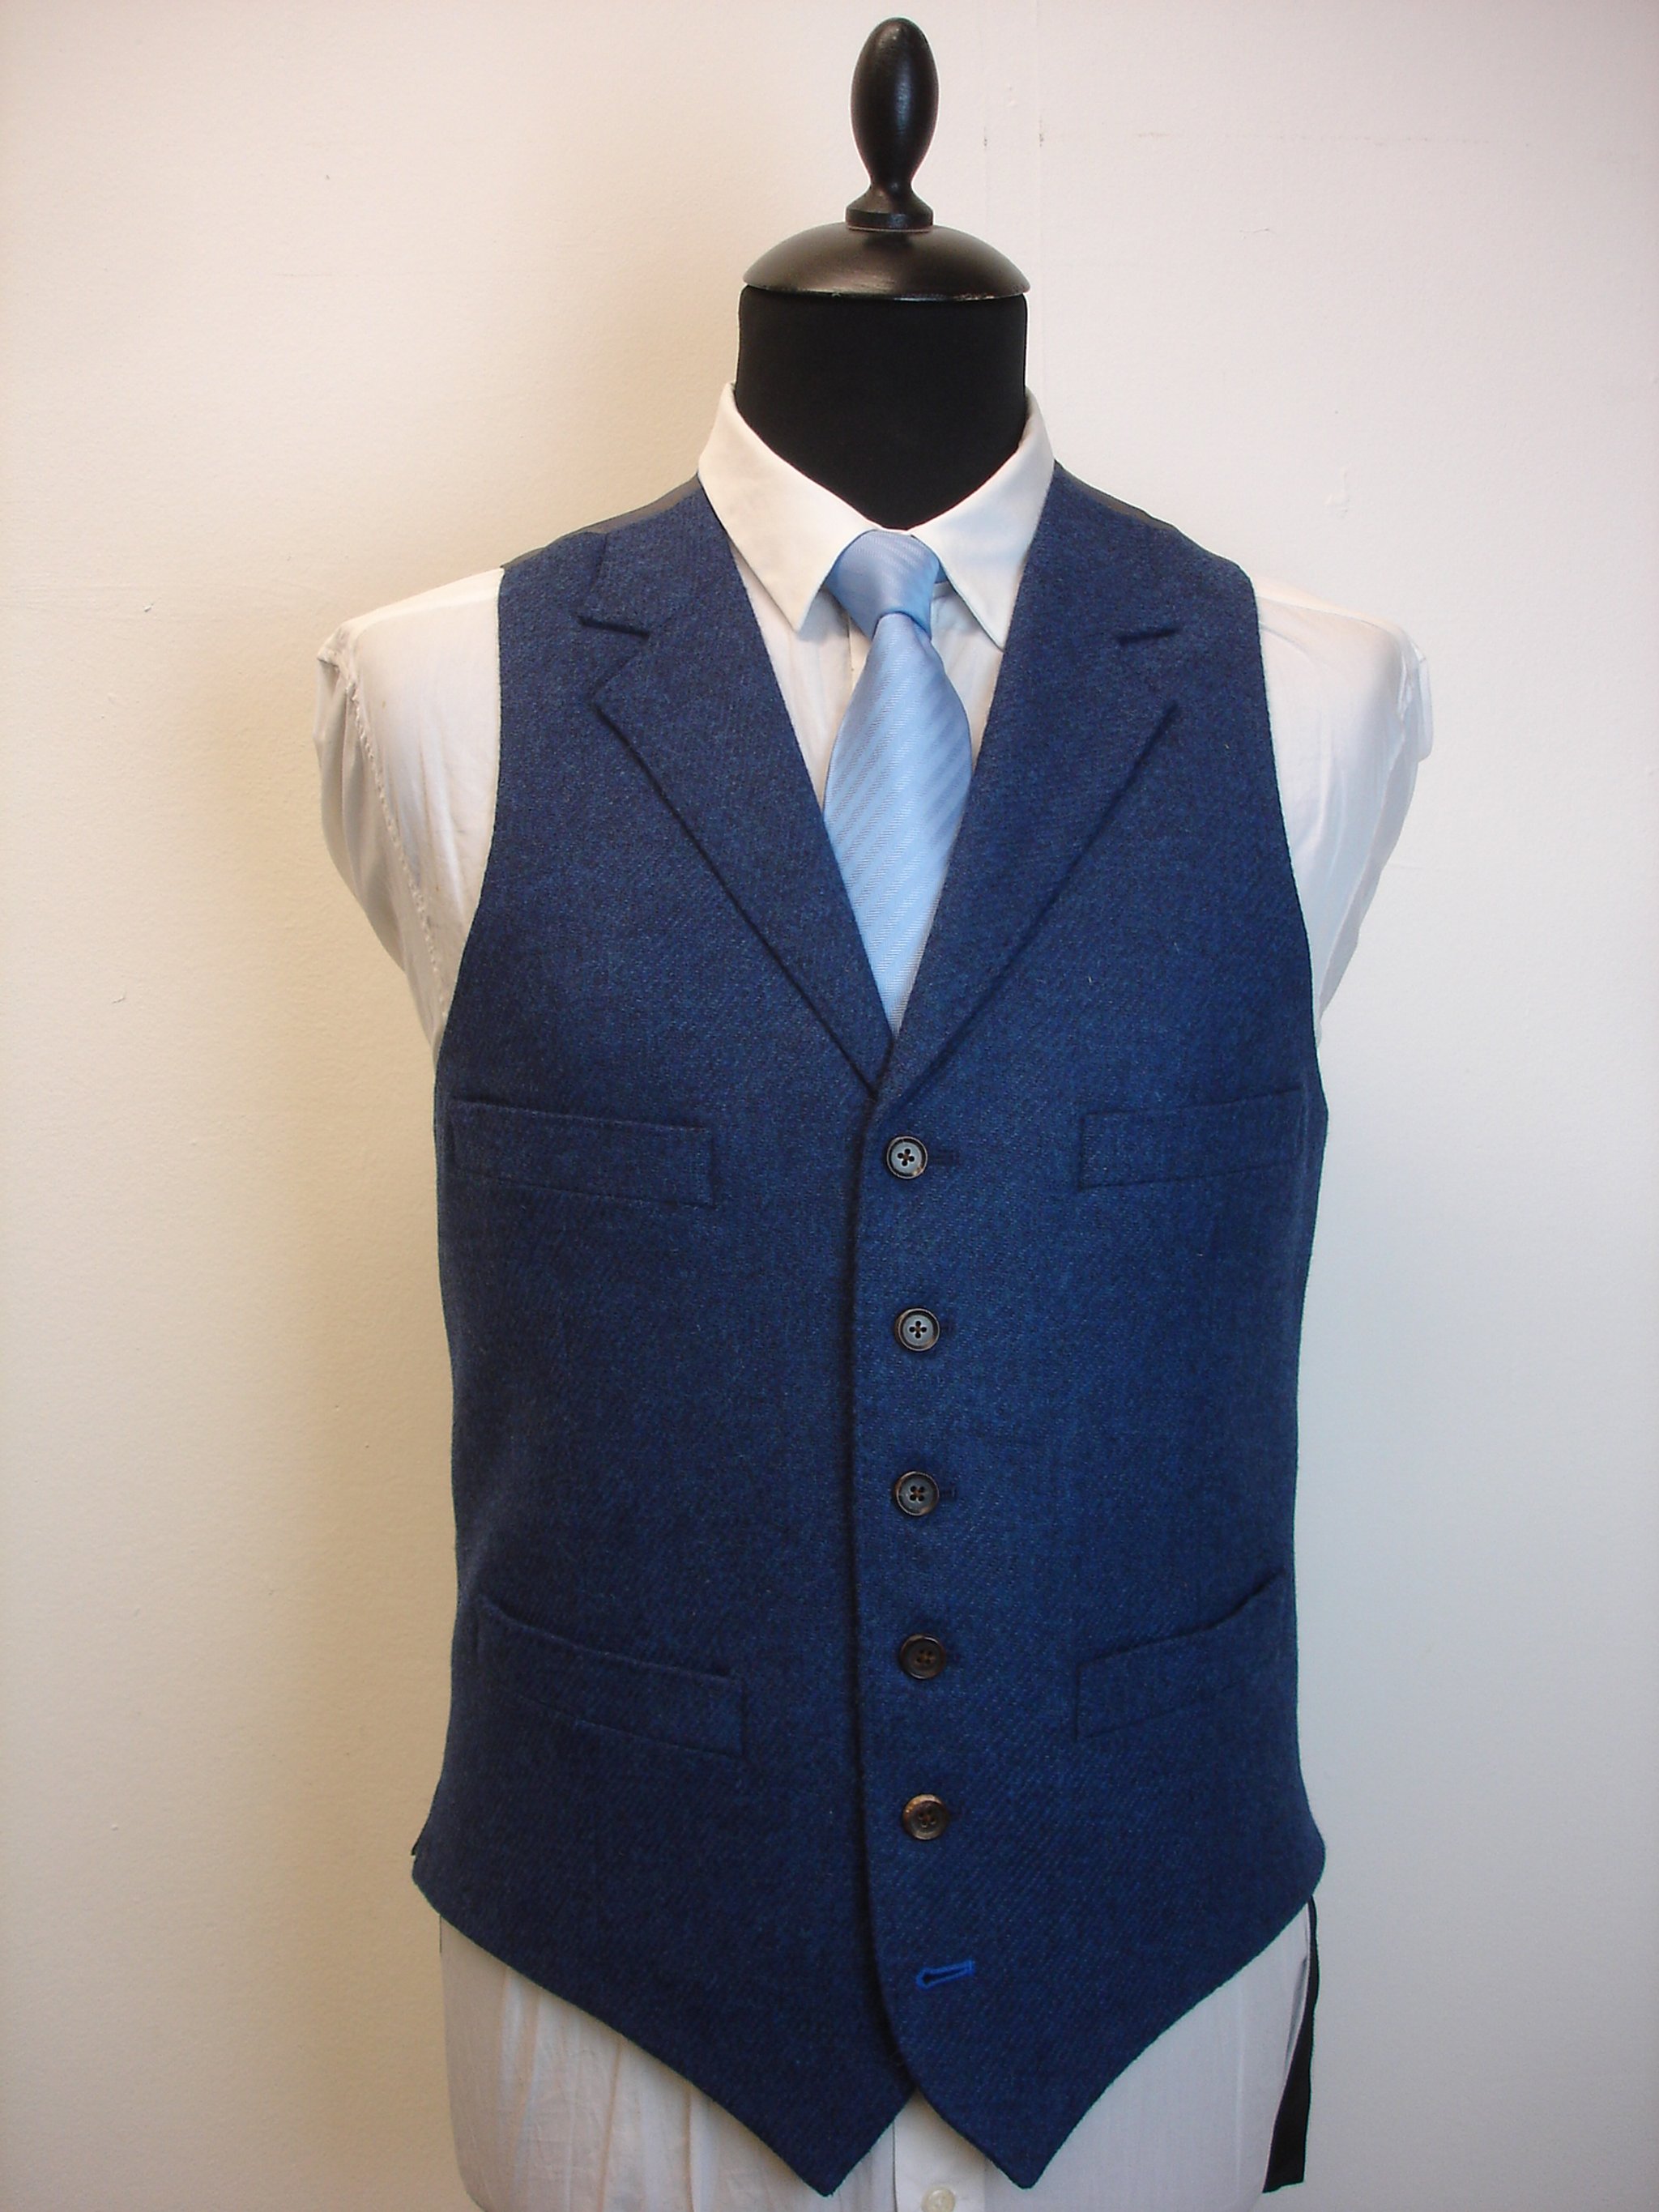 3 Piece Suit in Holland & SHerry Shetland Tweed (3).JPG